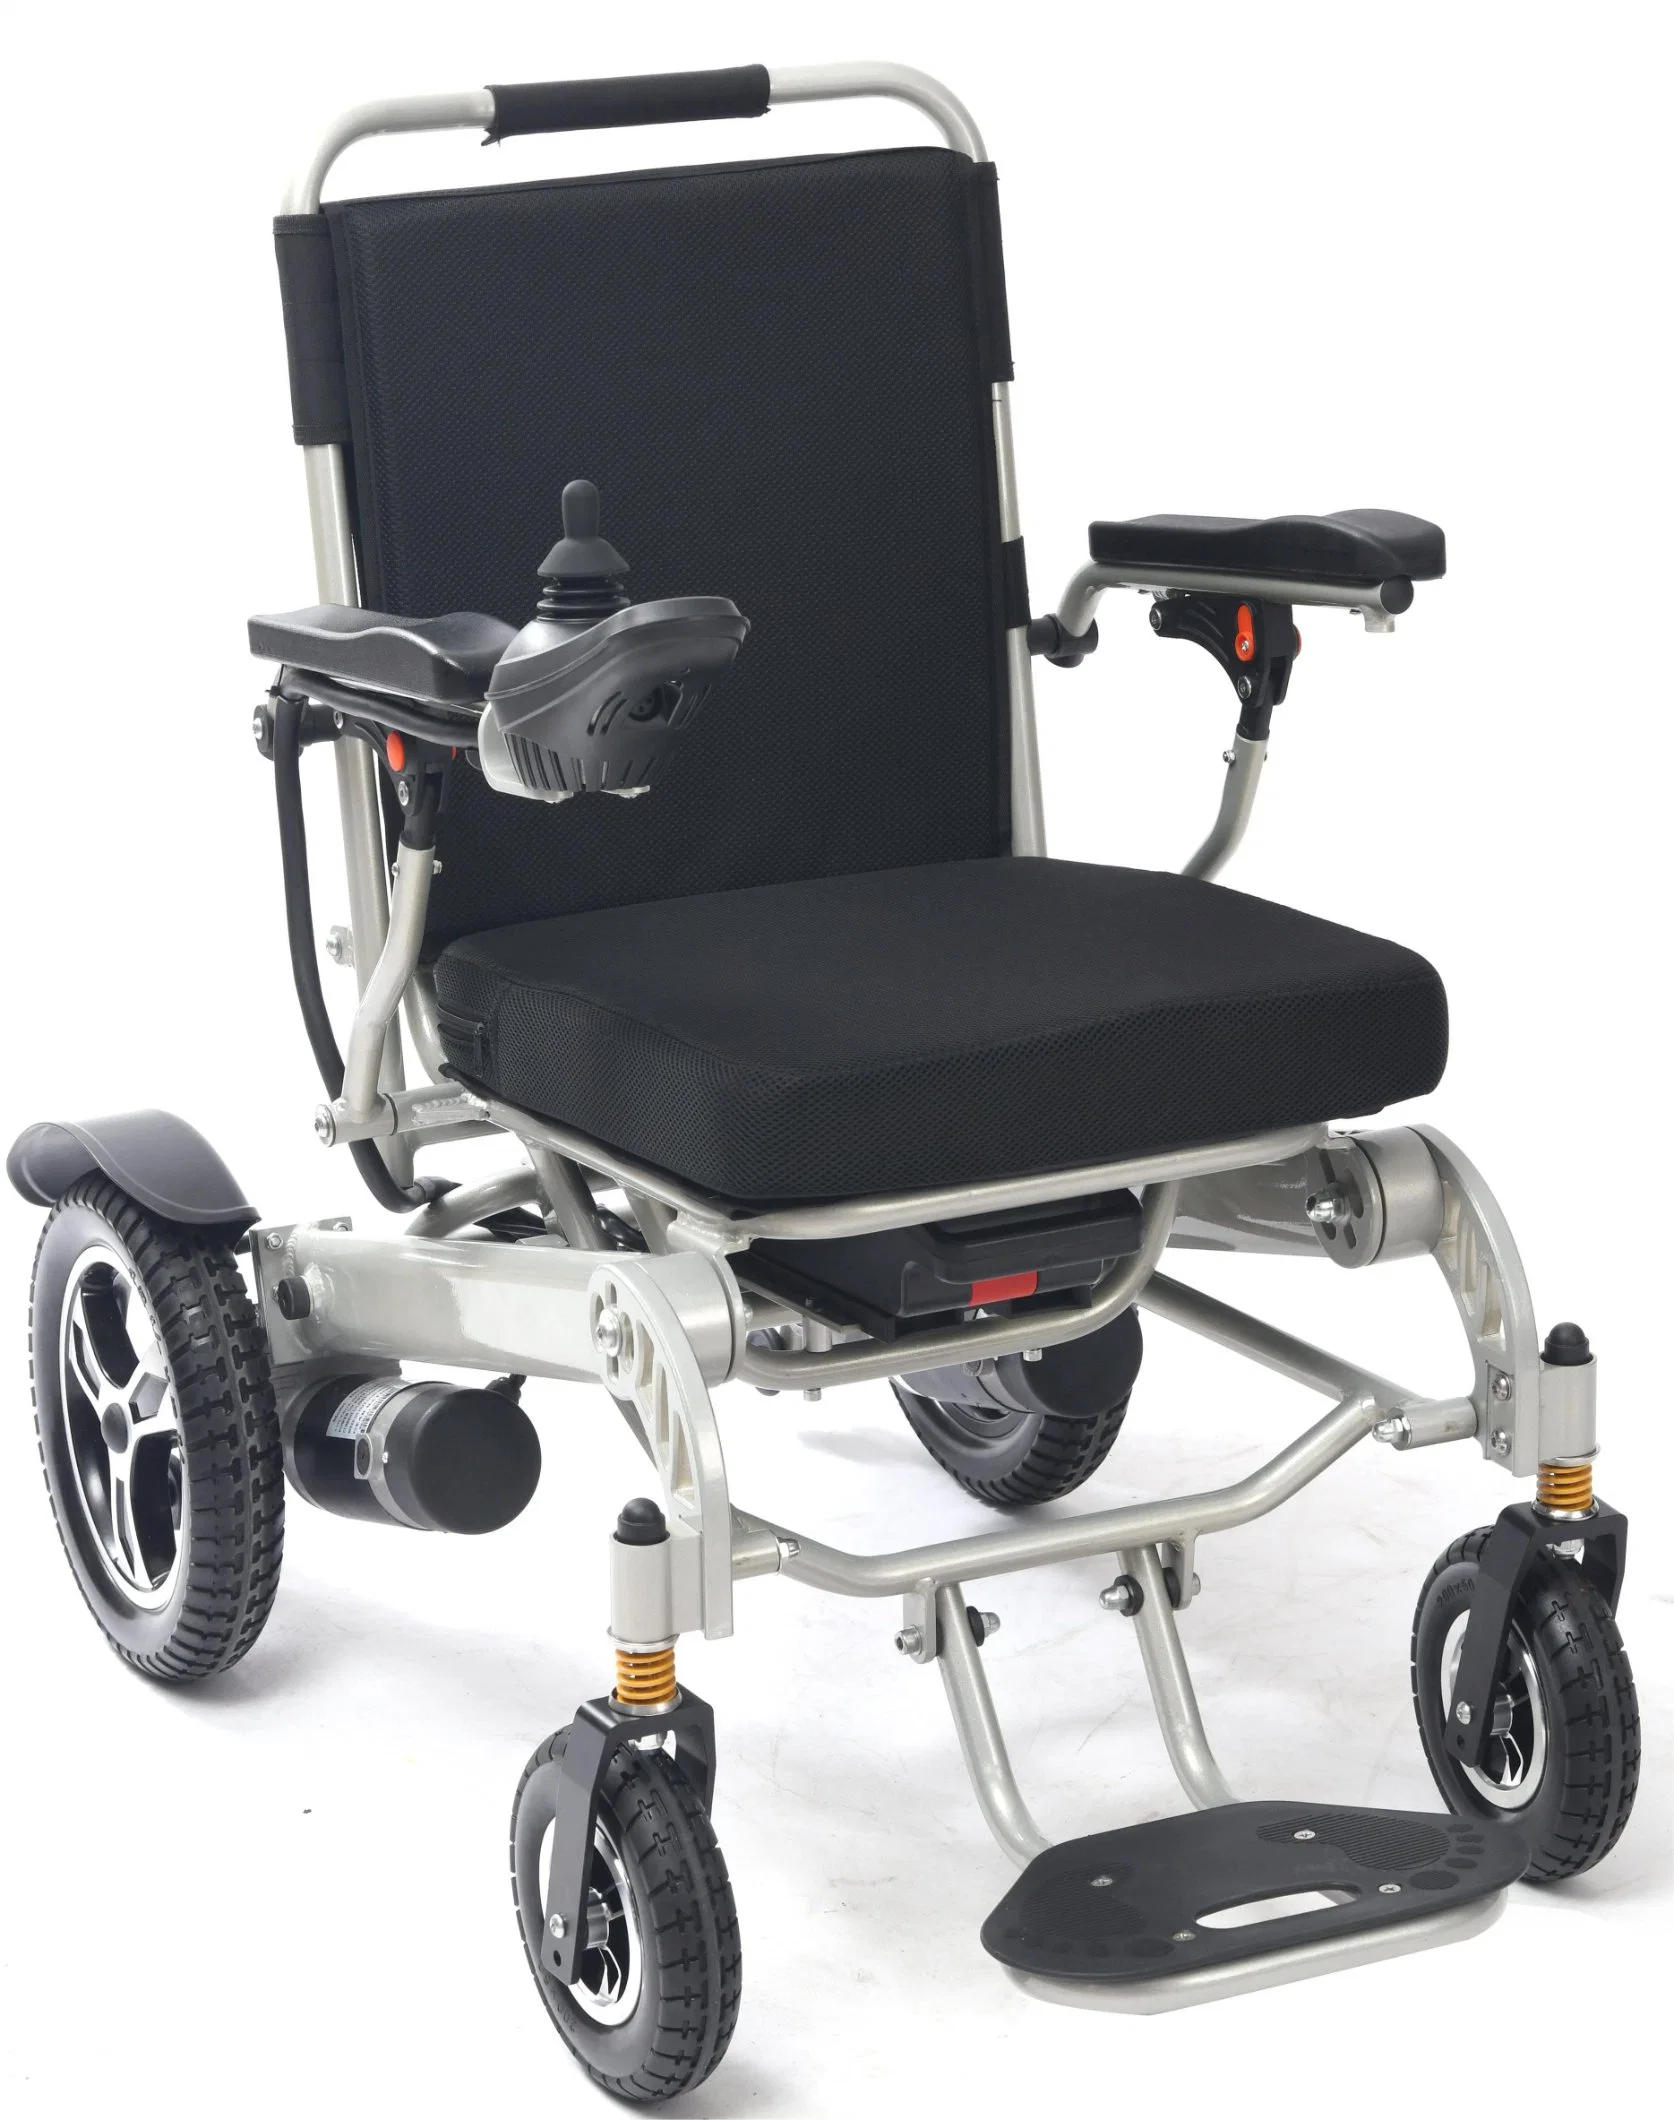 تخفيضات ساخنة سعر جديد معتمد من قبل ISO خفيف الوزن كرسي العجلة الصحة منتجات العناية الصحية كرسي متحرك كهربائي